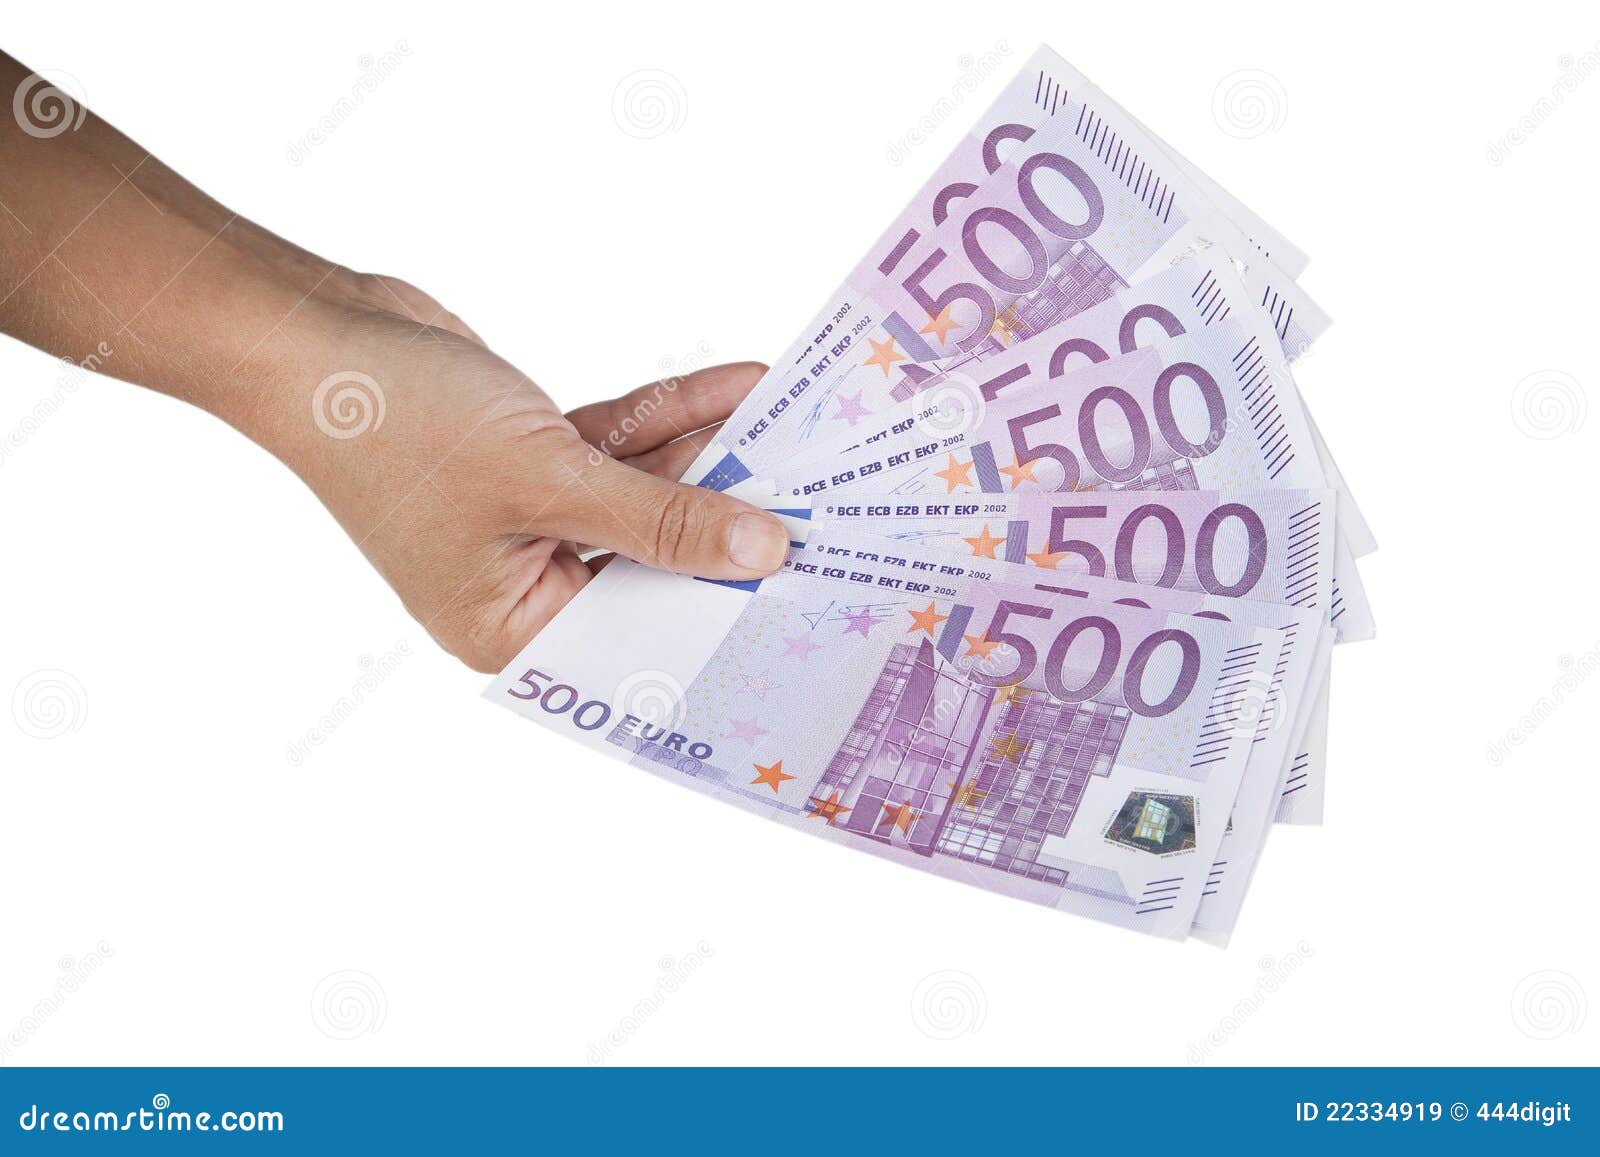 55000 рублей в евро. Купюры евро в руках. Пачка евро в руках. Пачка евро в руках на белом фоне. Евро на белом фоне.